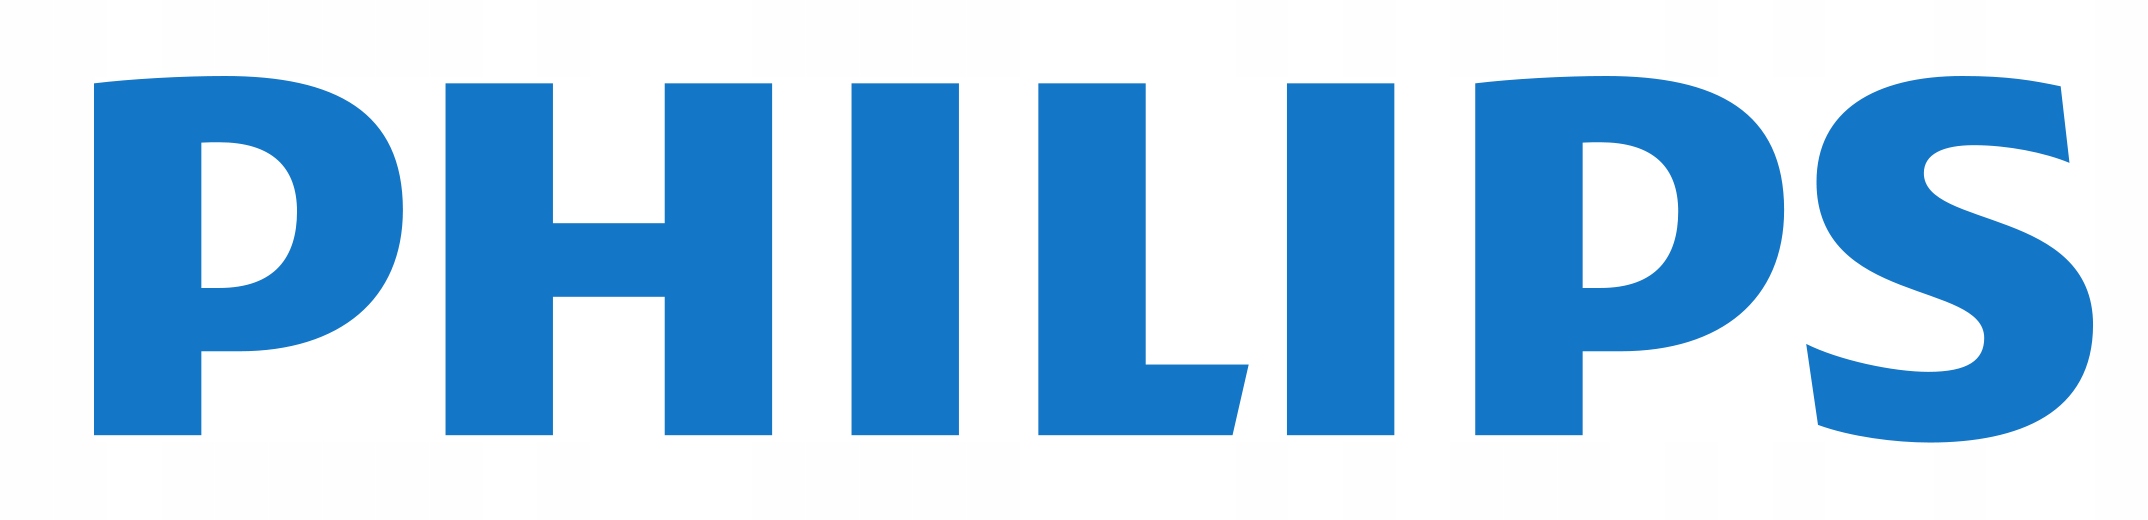 Philips. Филиппс. Значок Philips. Филипс логотип прозрачный.